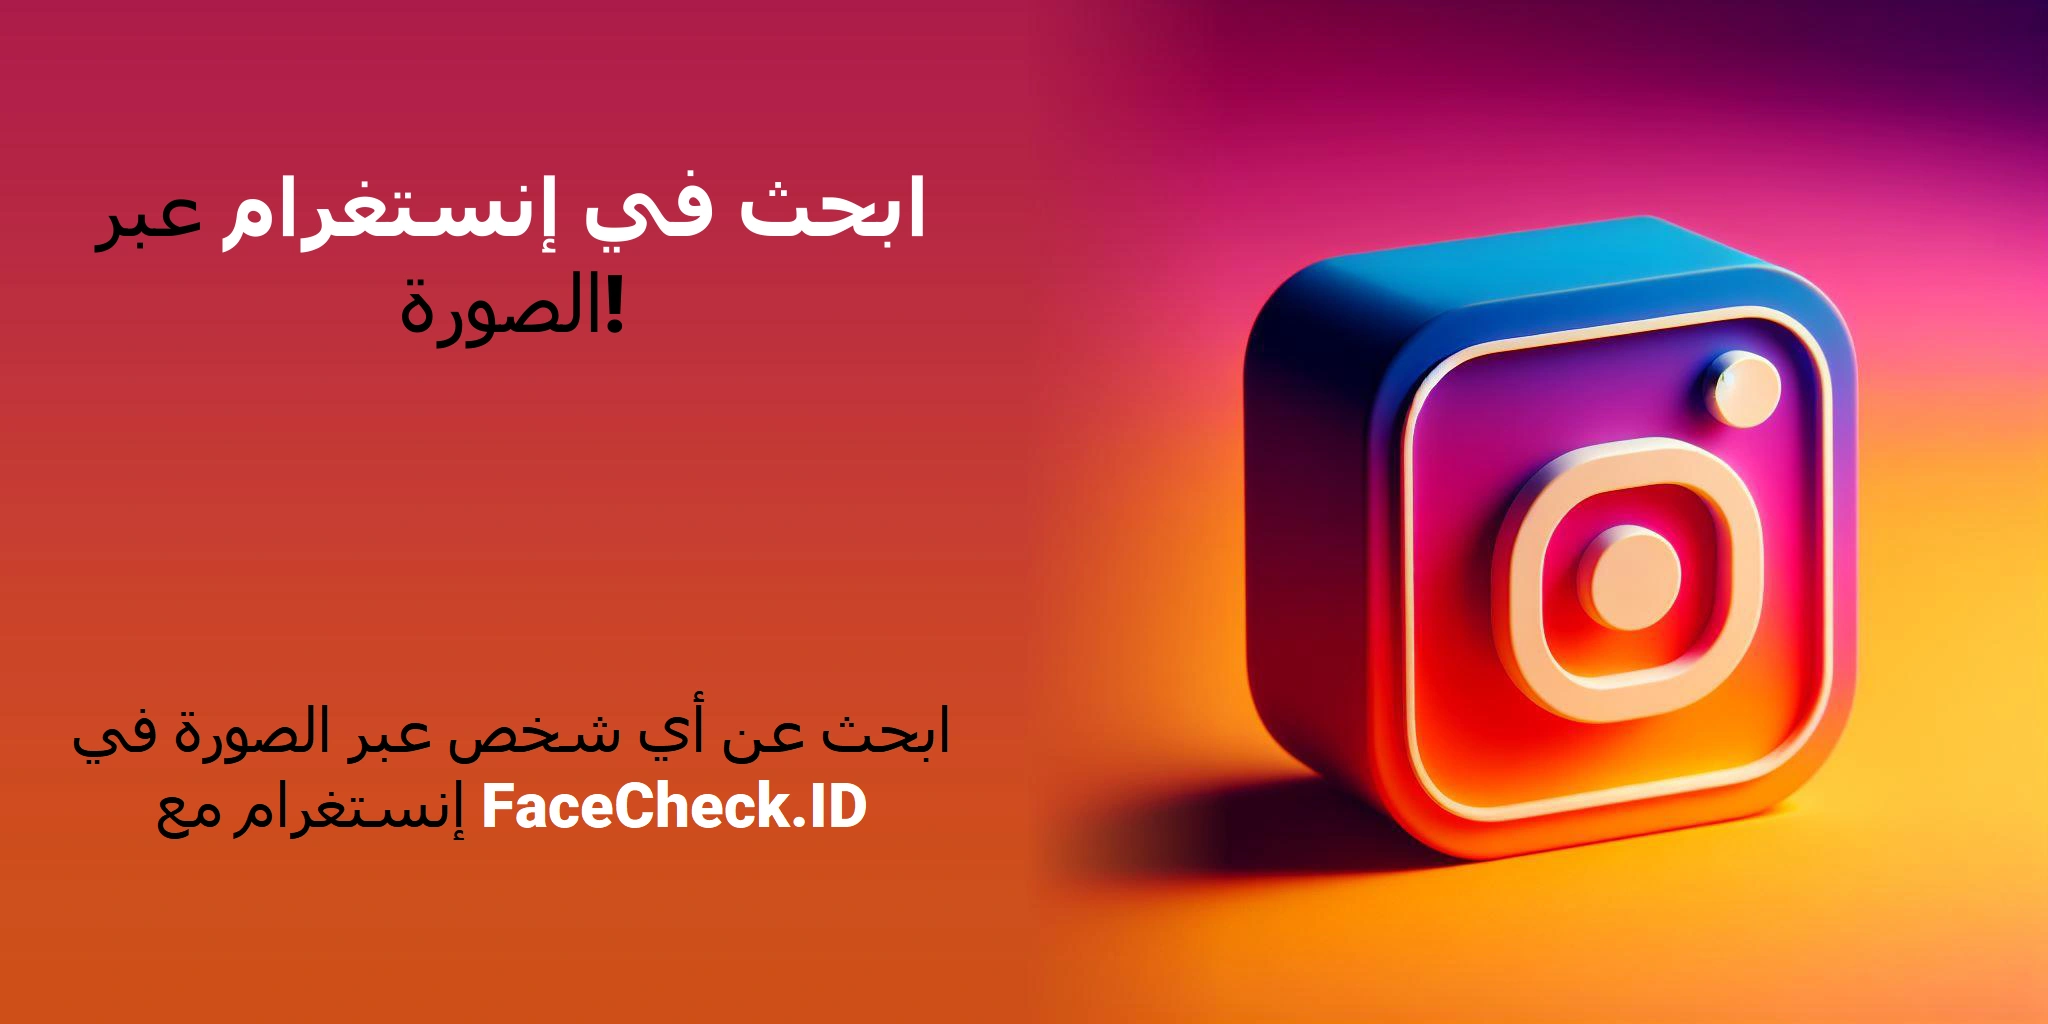 ابحث في إنستغرام عبر الصورة! ابحث عن أي شخص عبر الصورة في إنستغرام مع FaceCheck.ID